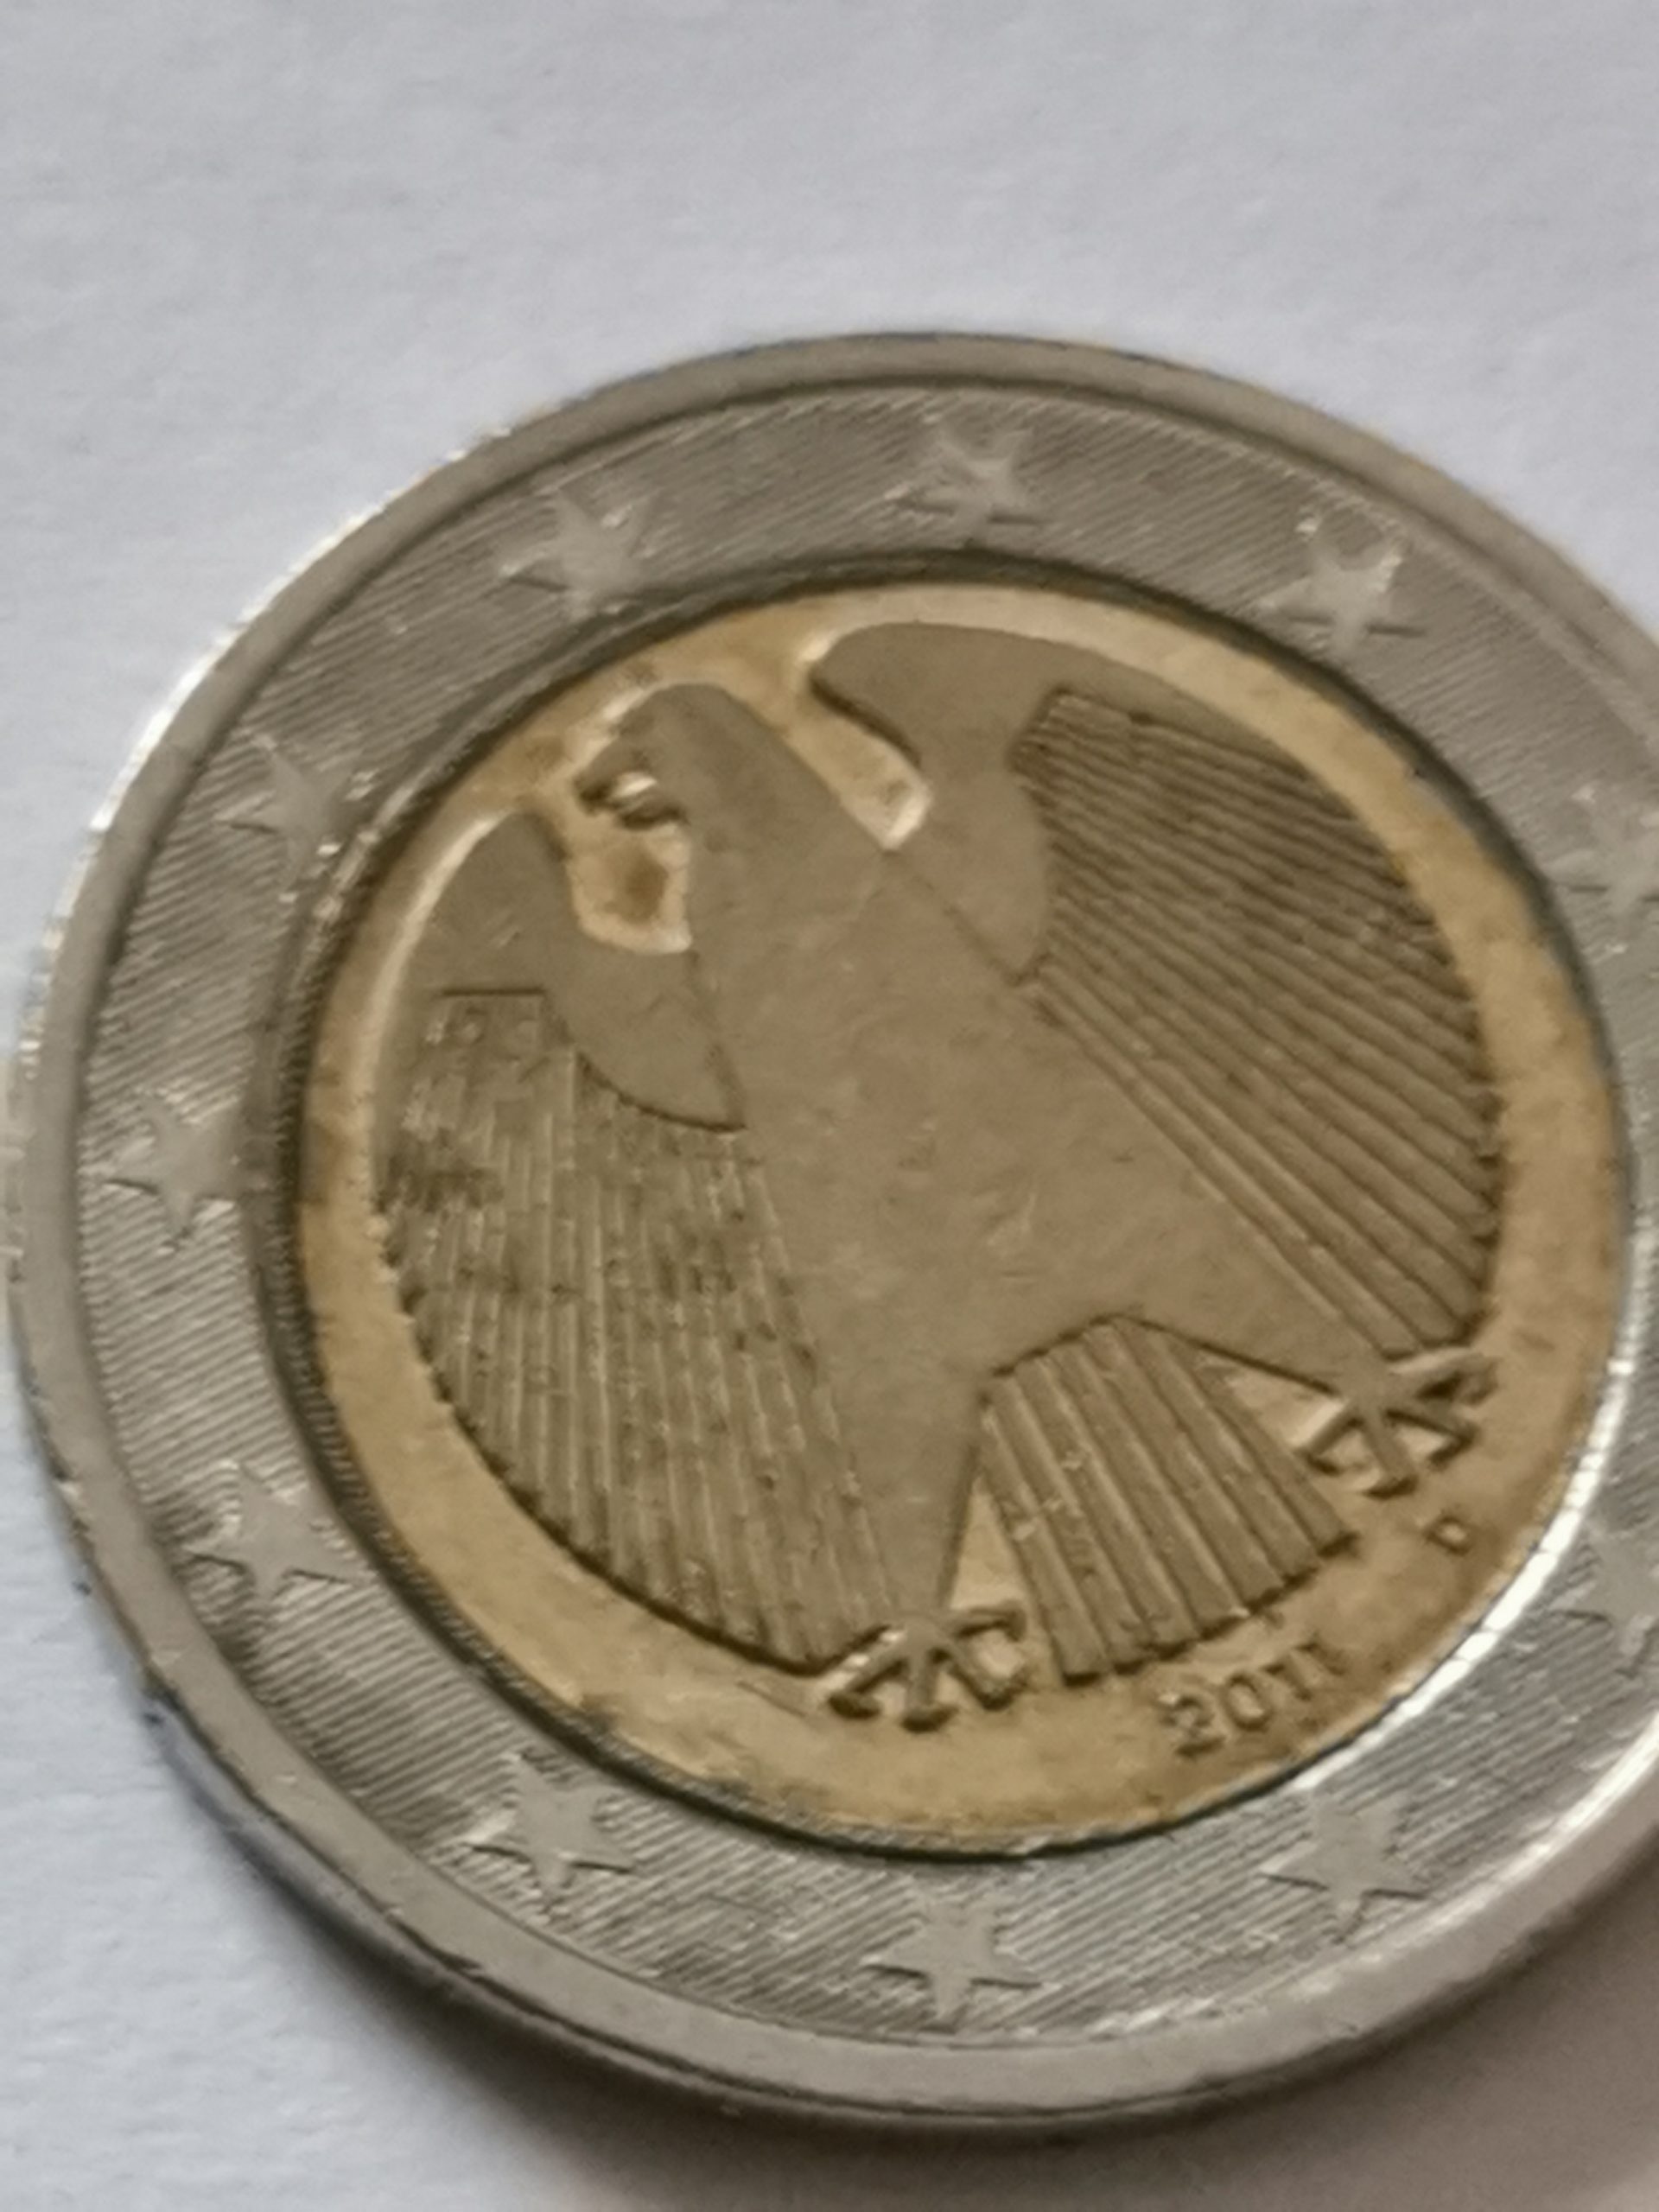 German 2 Euro coin – Deutsche 2 euro münze